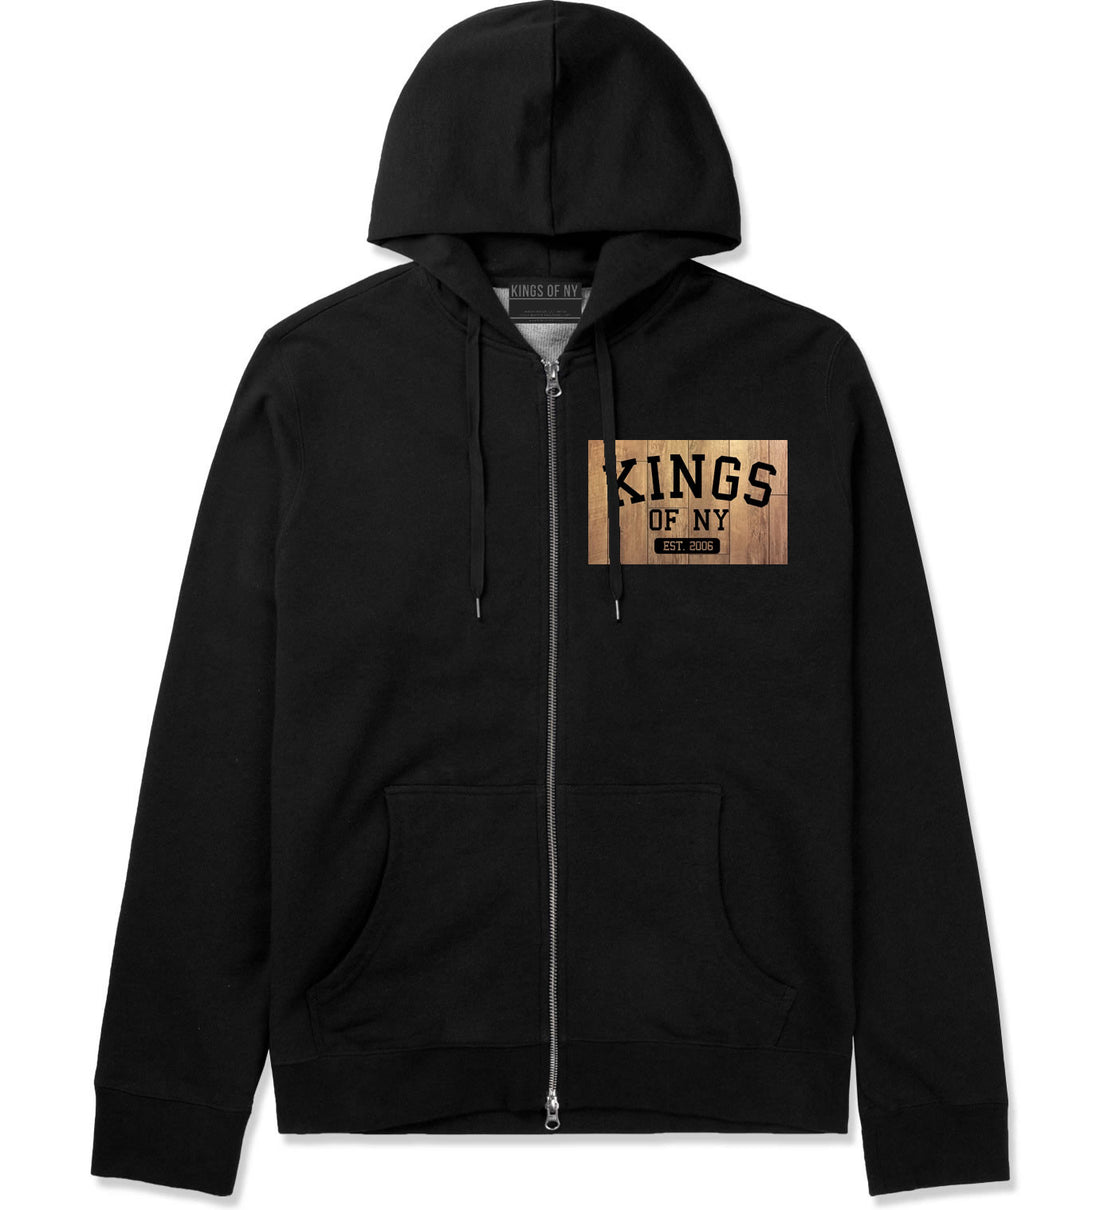 Hardwood Basketball Logo Zip Up Hoodie Hoody in Black by Kings Of NY